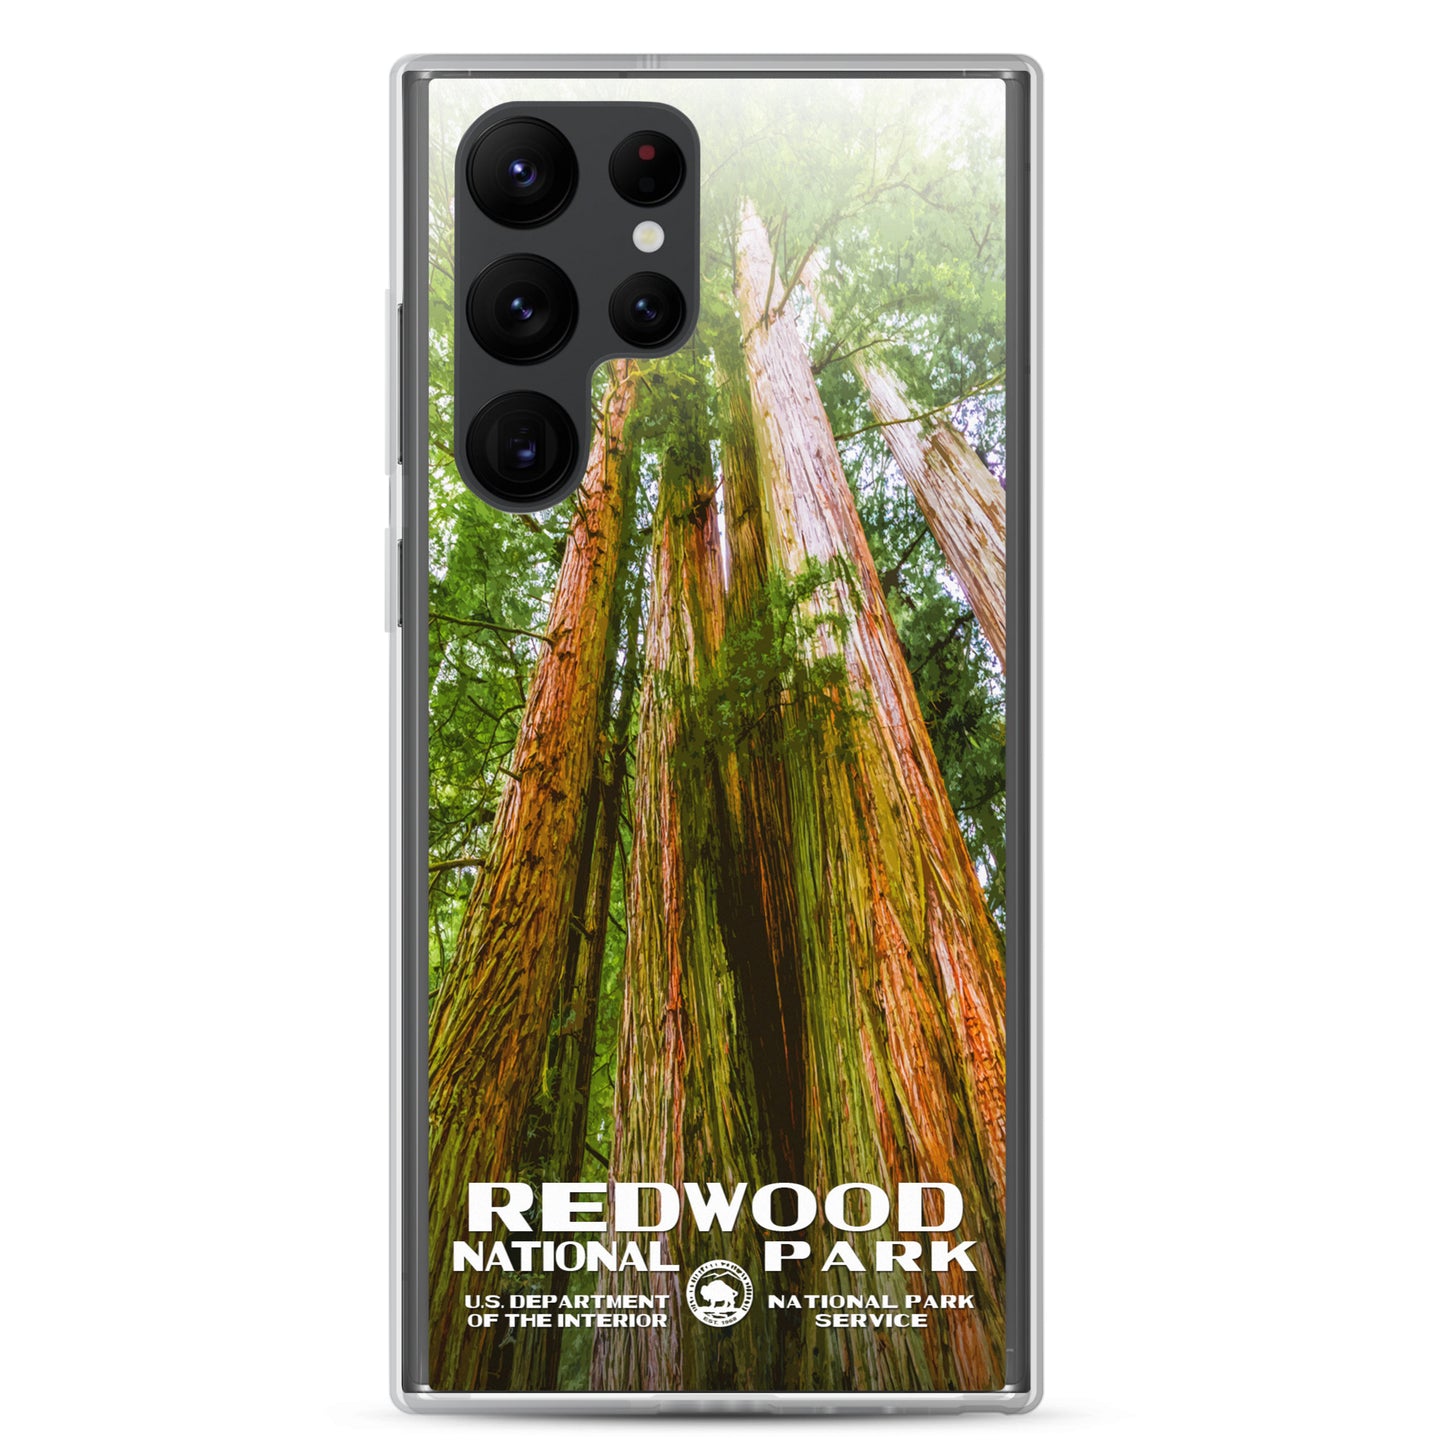 Redwood National Park Samsung® Phone Case